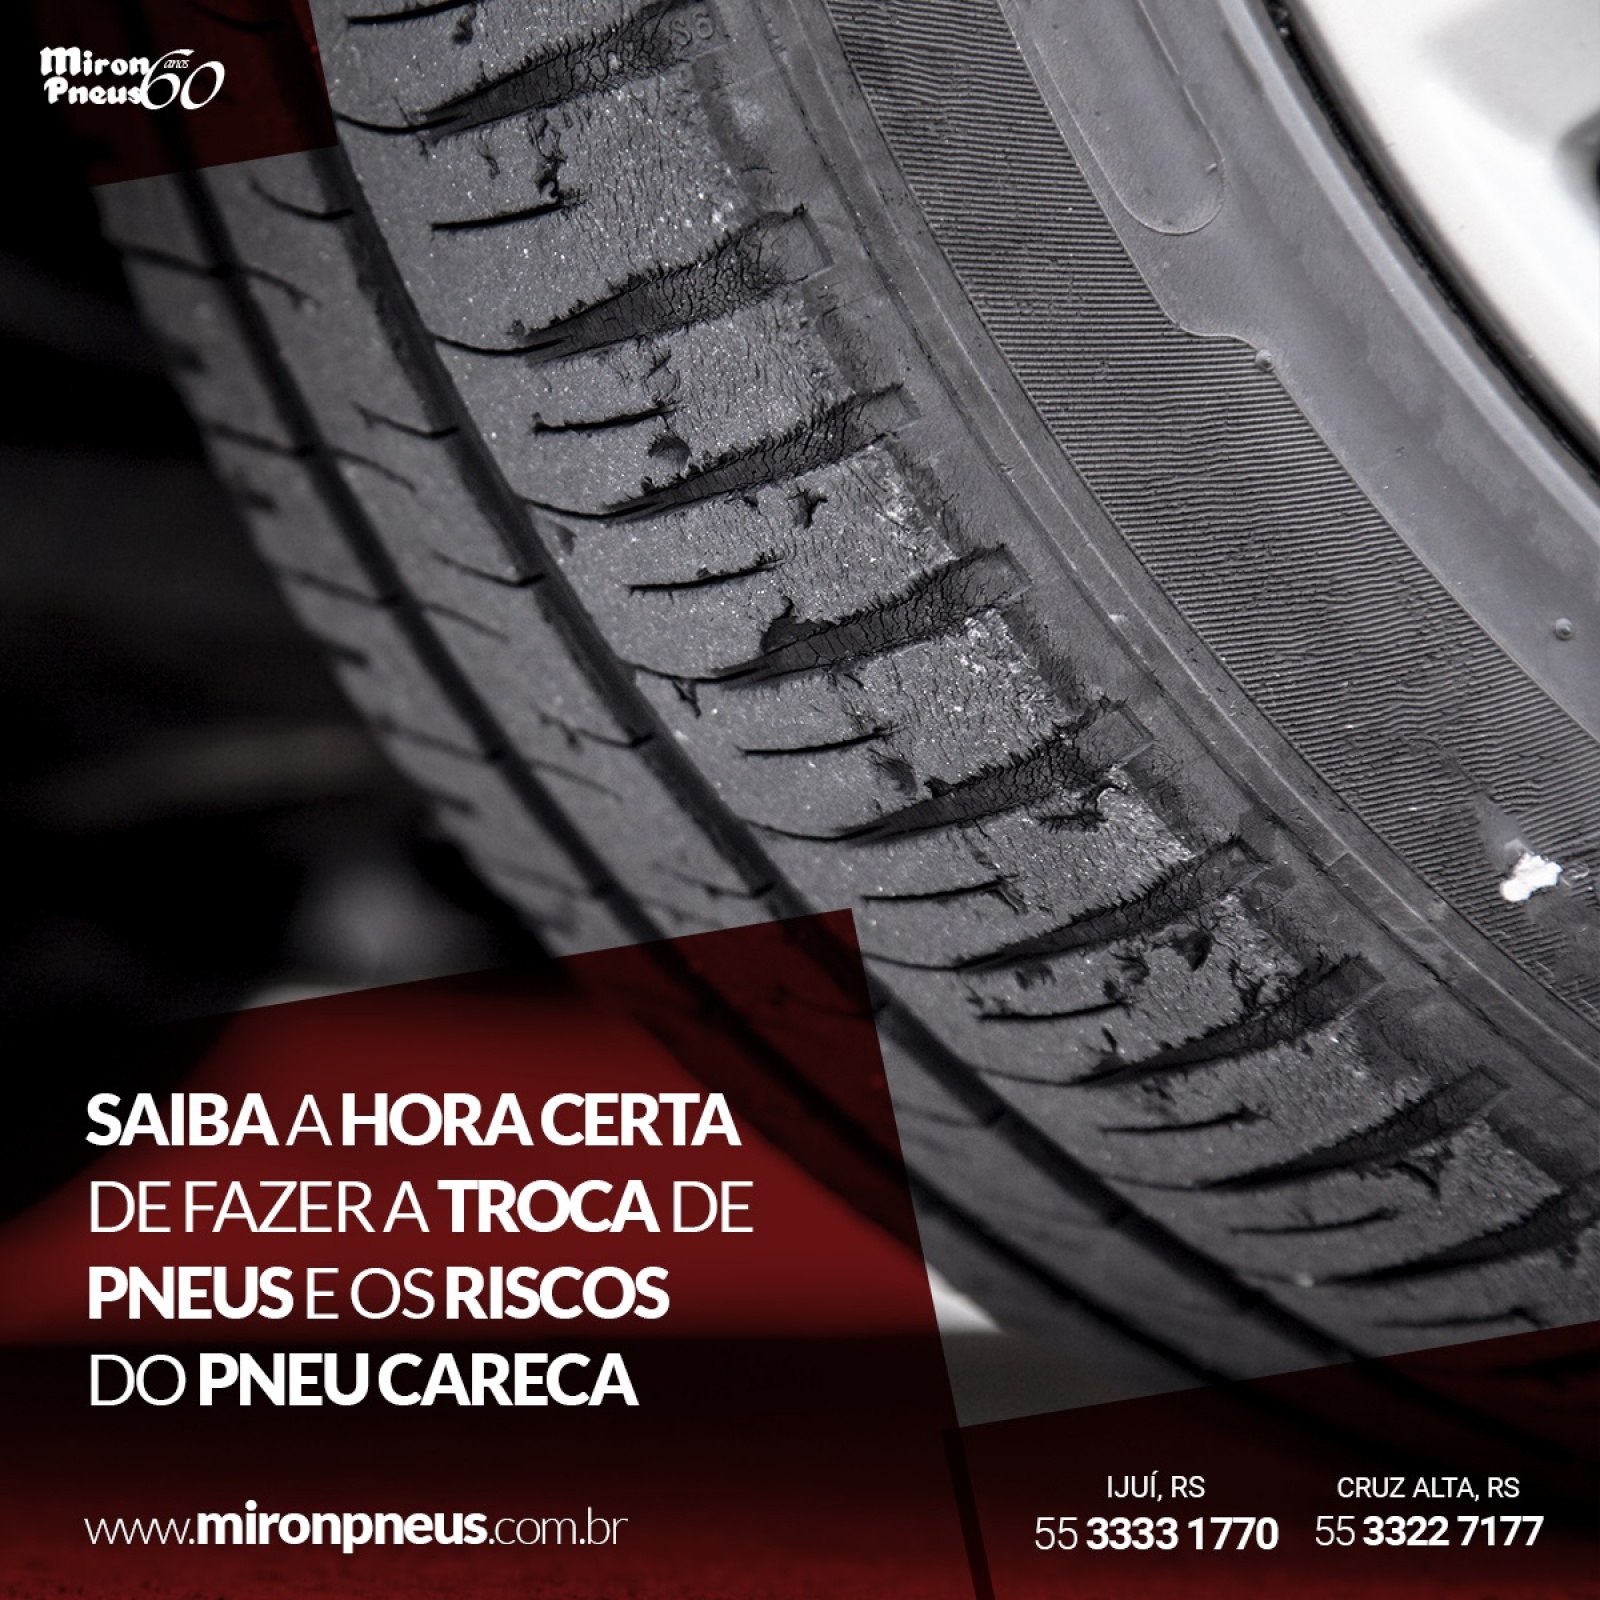 Saiba a hora certa de fazer a troca de pneus e os riscos do pneu careca